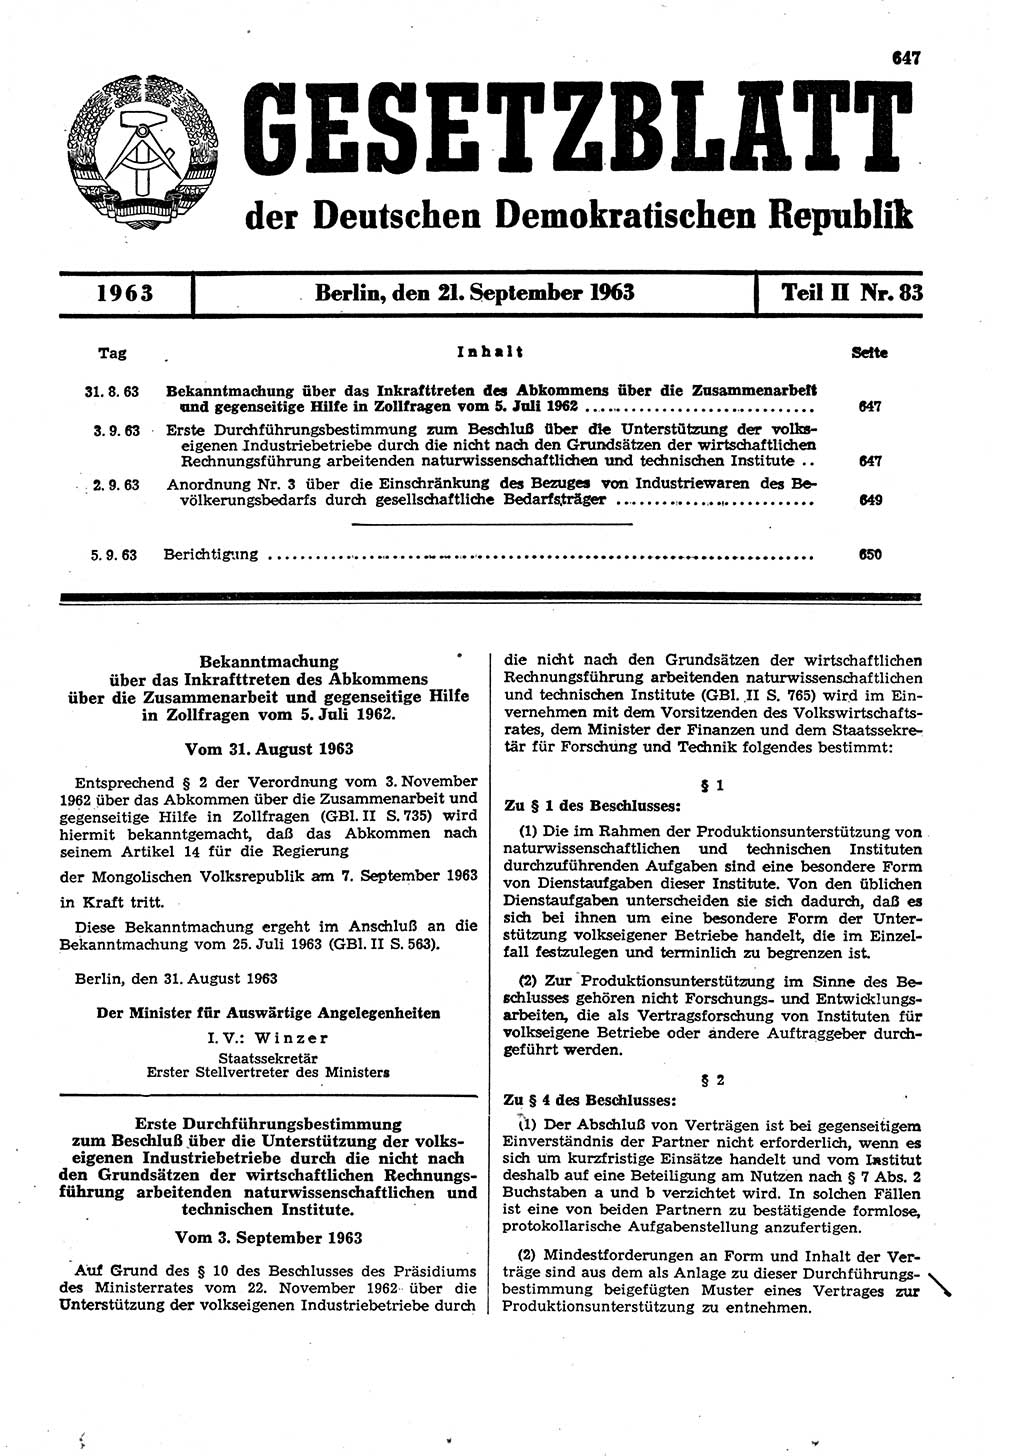 Gesetzblatt (GBl.) der Deutschen Demokratischen Republik (DDR) Teil ⅠⅠ 1963, Seite 647 (GBl. DDR ⅠⅠ 1963, S. 647)